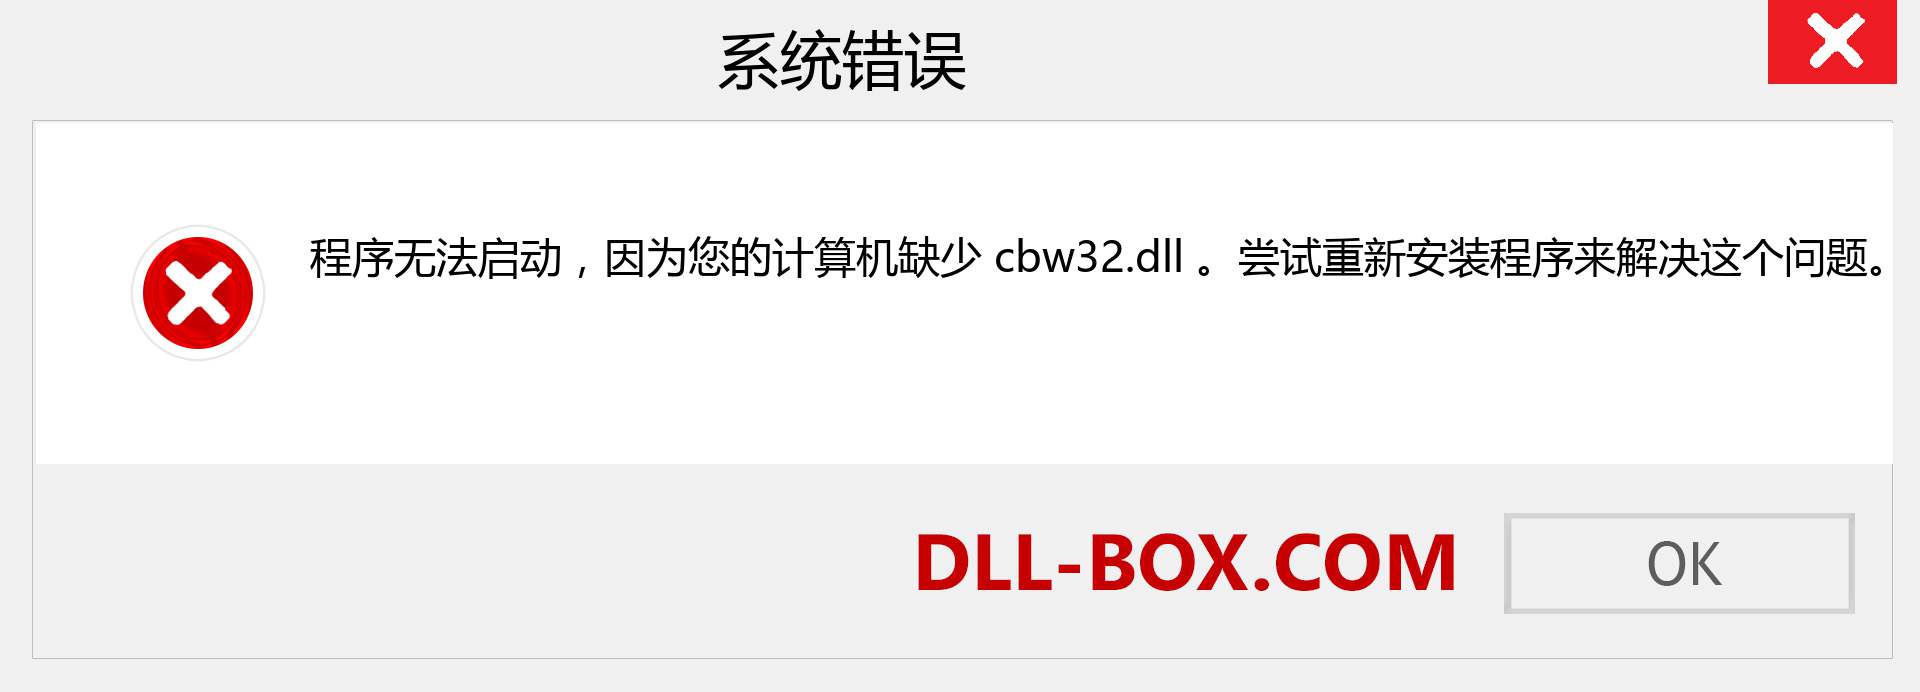 cbw32.dll 文件丢失？。 适用于 Windows 7、8、10 的下载 - 修复 Windows、照片、图像上的 cbw32 dll 丢失错误